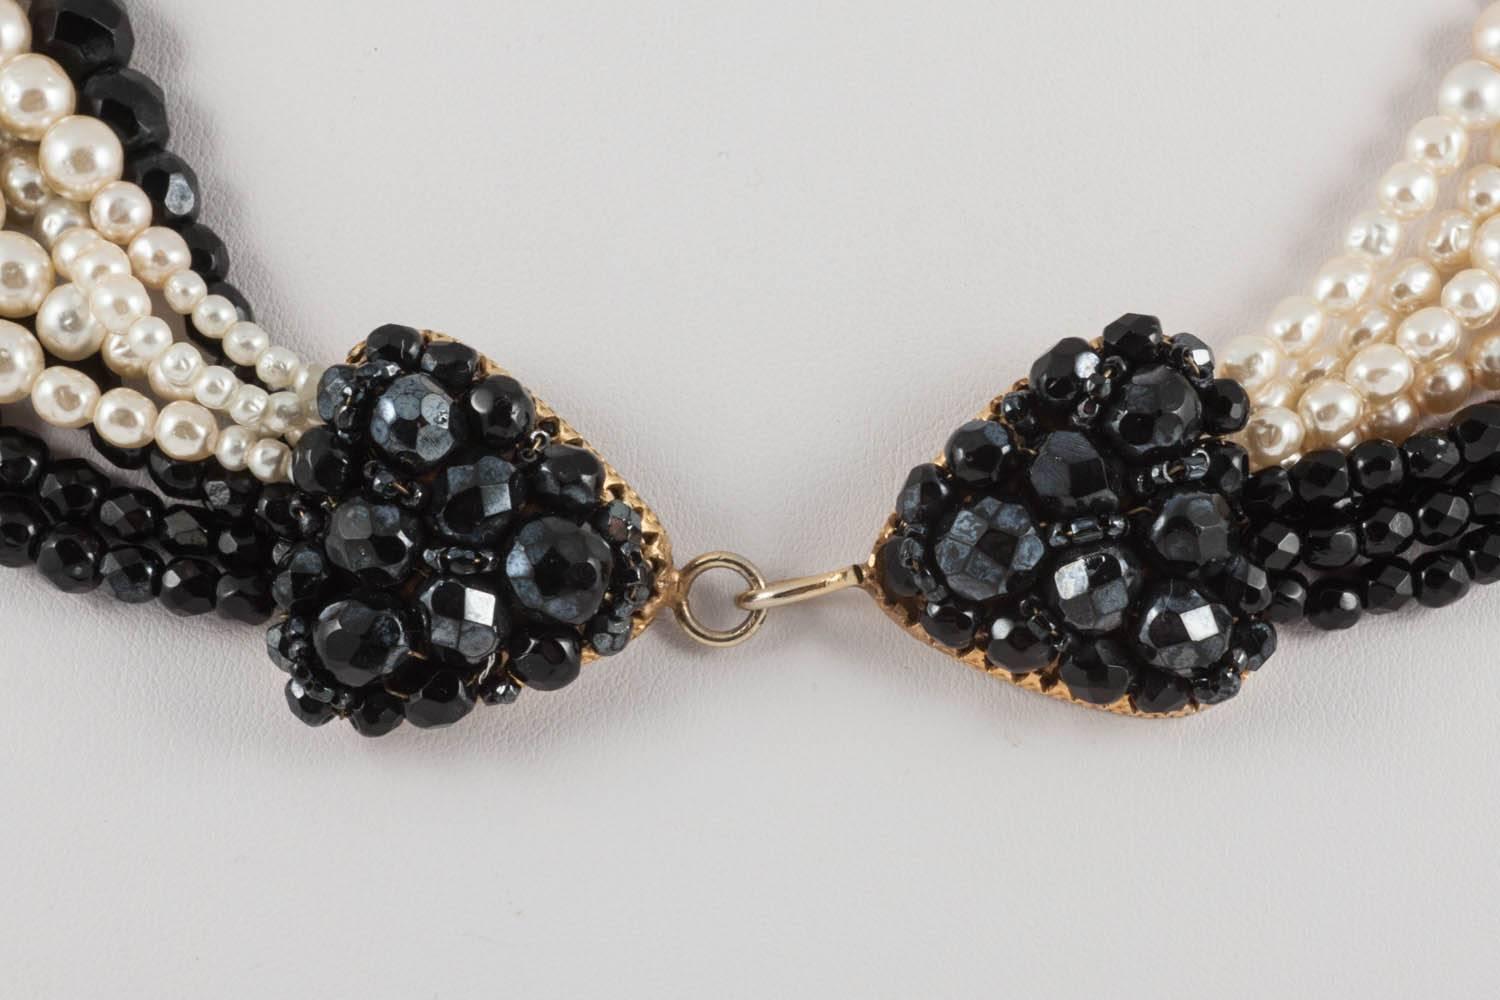  Black bead and faux cream baroque pearl 'twist' necklace, Coppola e Toppo, 1960s 1